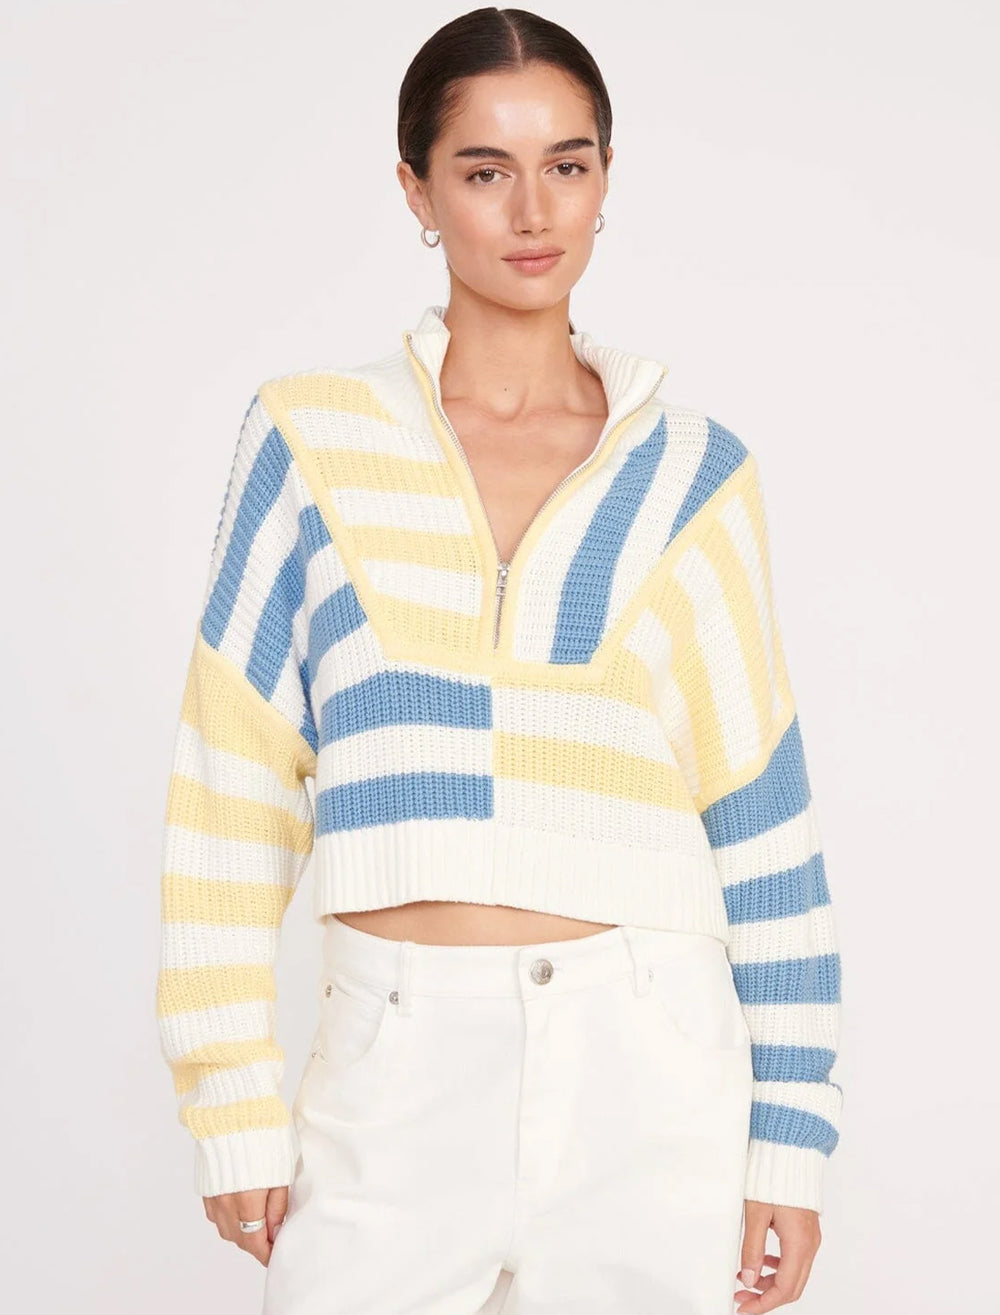 Model wearing STAUD's cropped hampton sweater in buttercup seashore stripe.